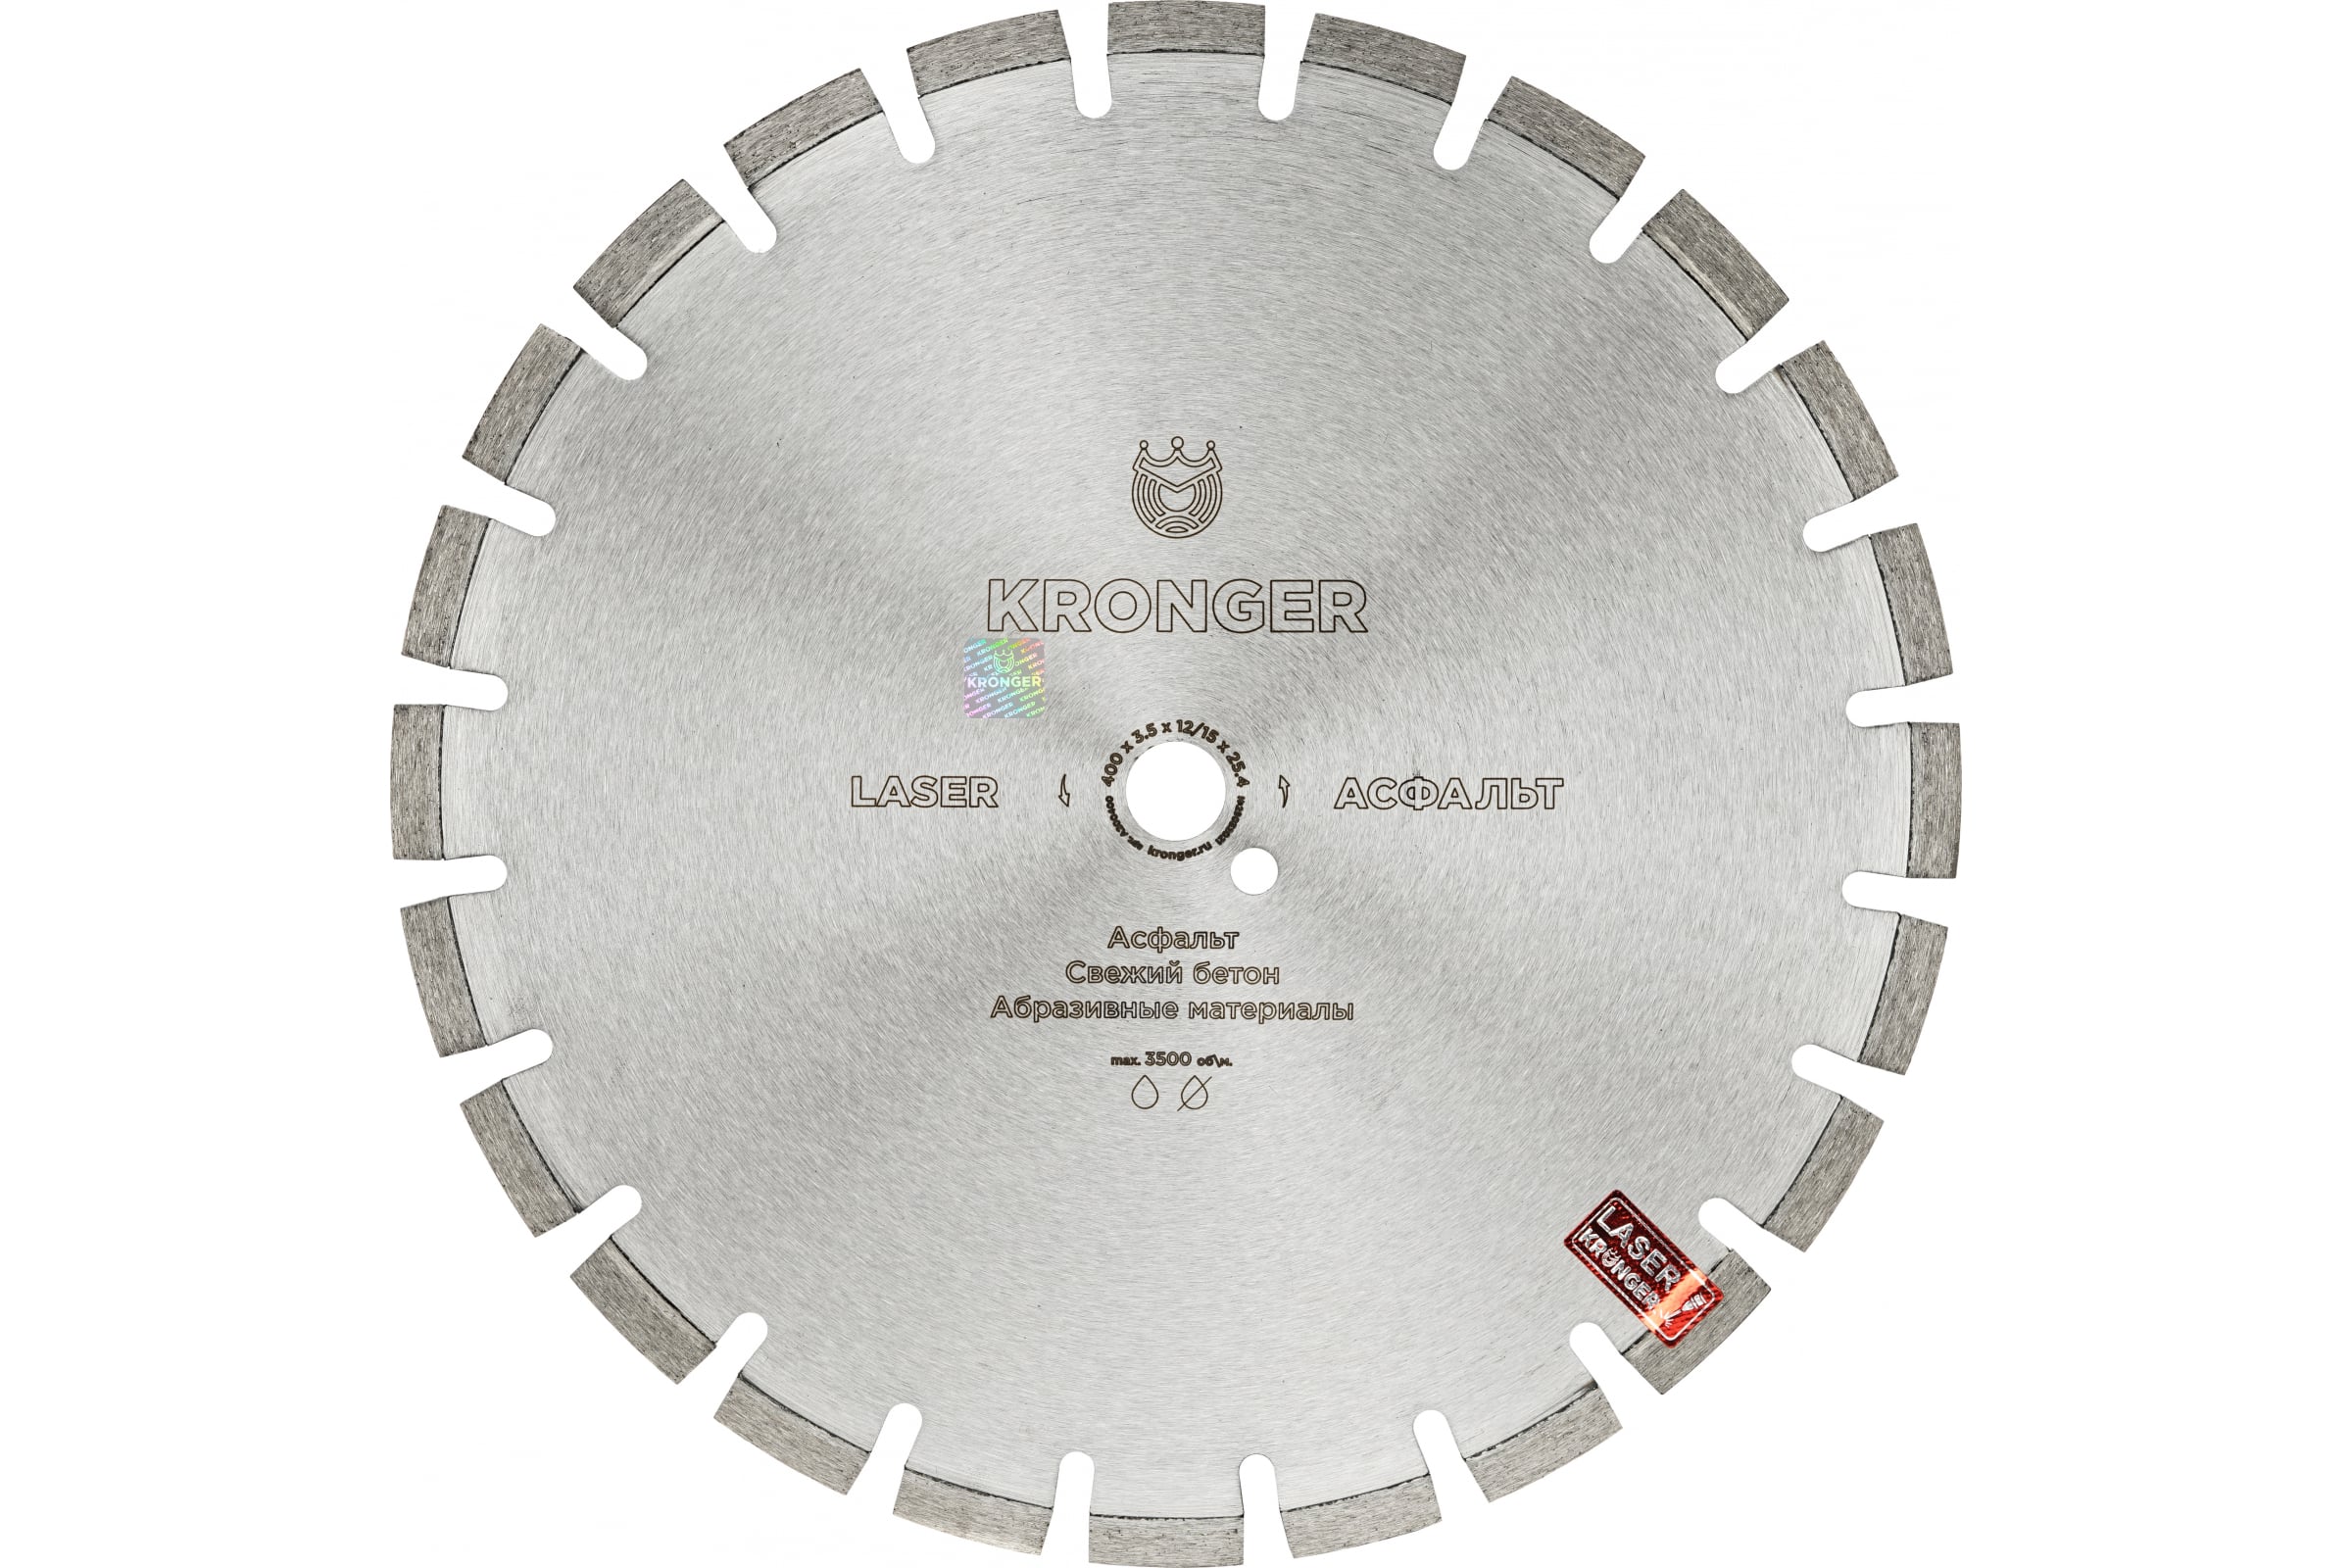 фото Kronger алмазный сегментный диск по асфальту 400x25.4 a200400